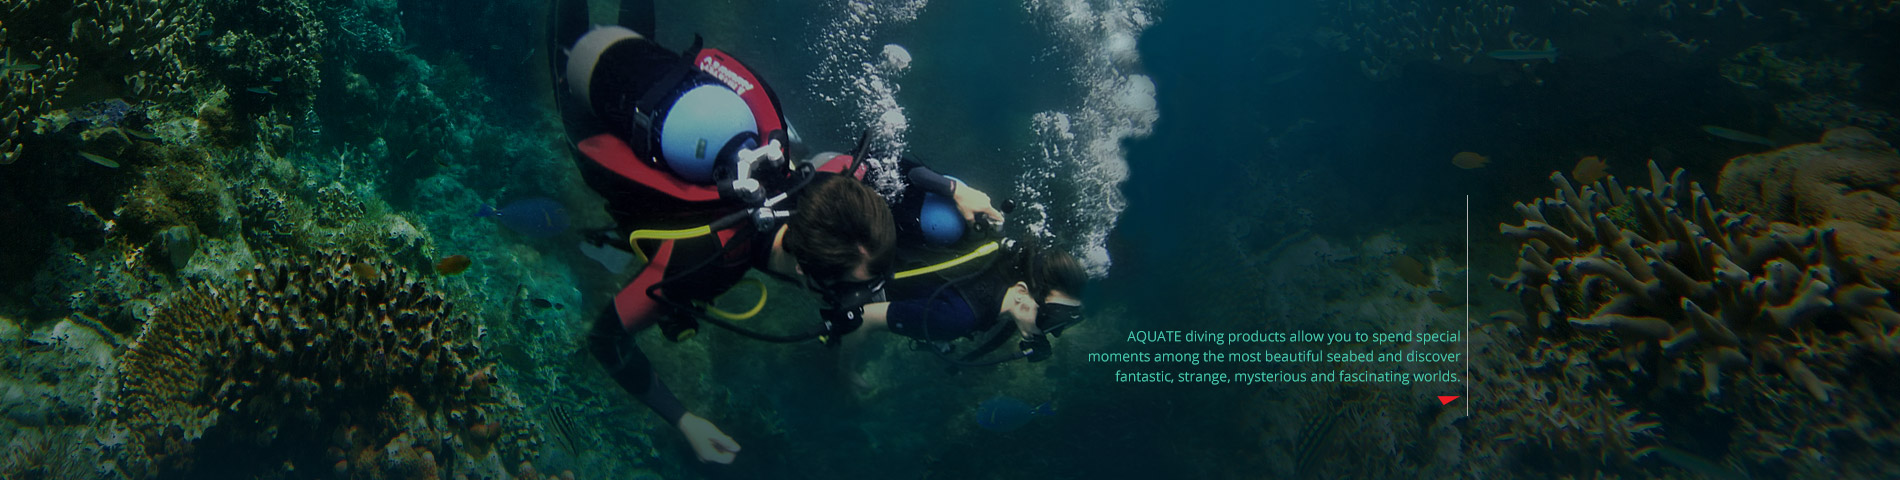 AQUATEC Produk inovatif untuk sukan menyelam